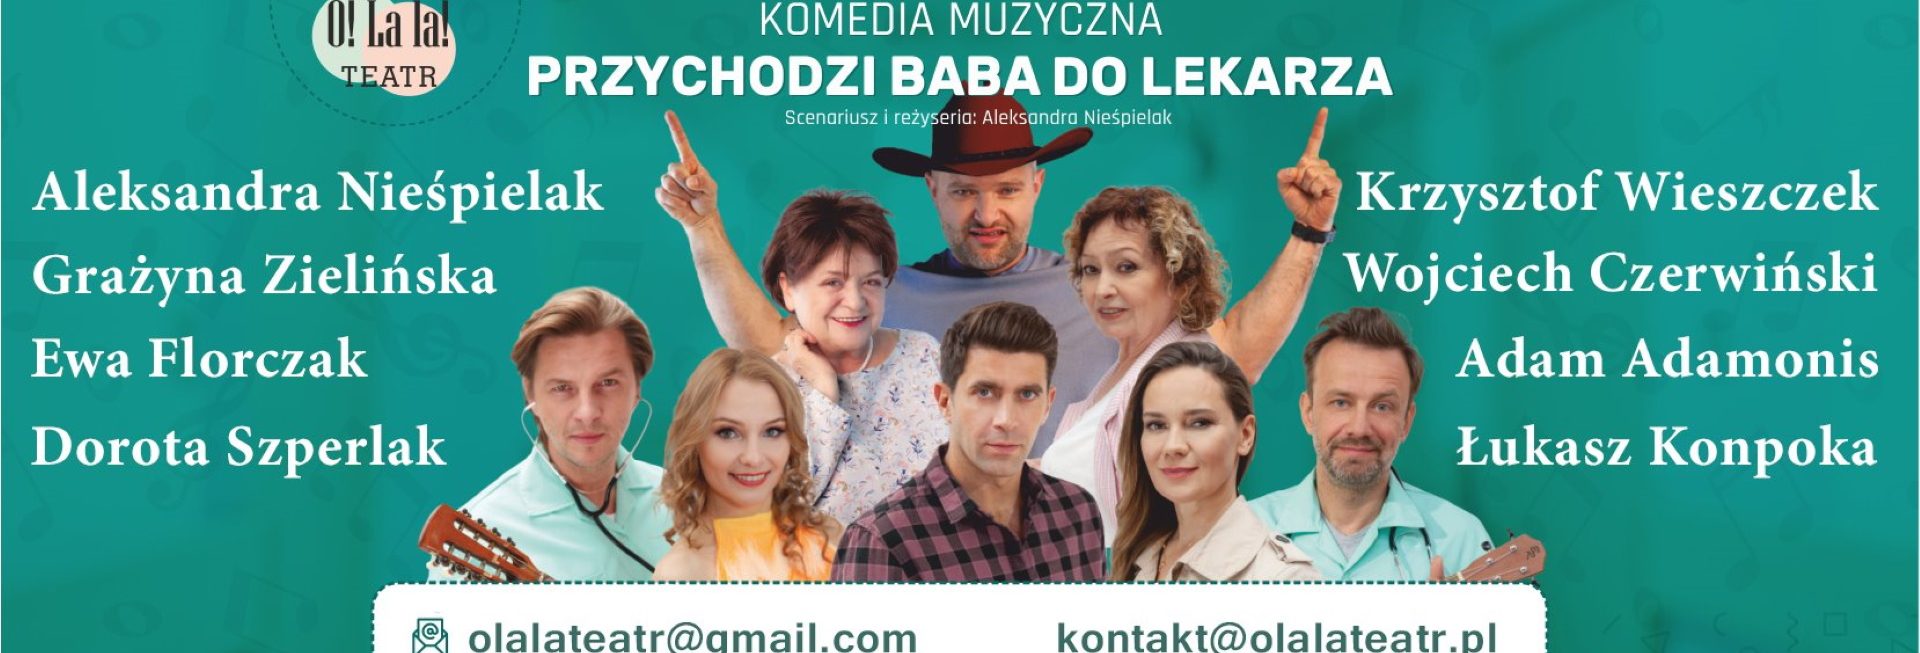 Plakat graficzny zapraszający do Olecka na spektakl komediowy "Przychodzi baba do lekarza". Na plakacie zdjęcia artystów i aktorów grających w przedstawieniu. 